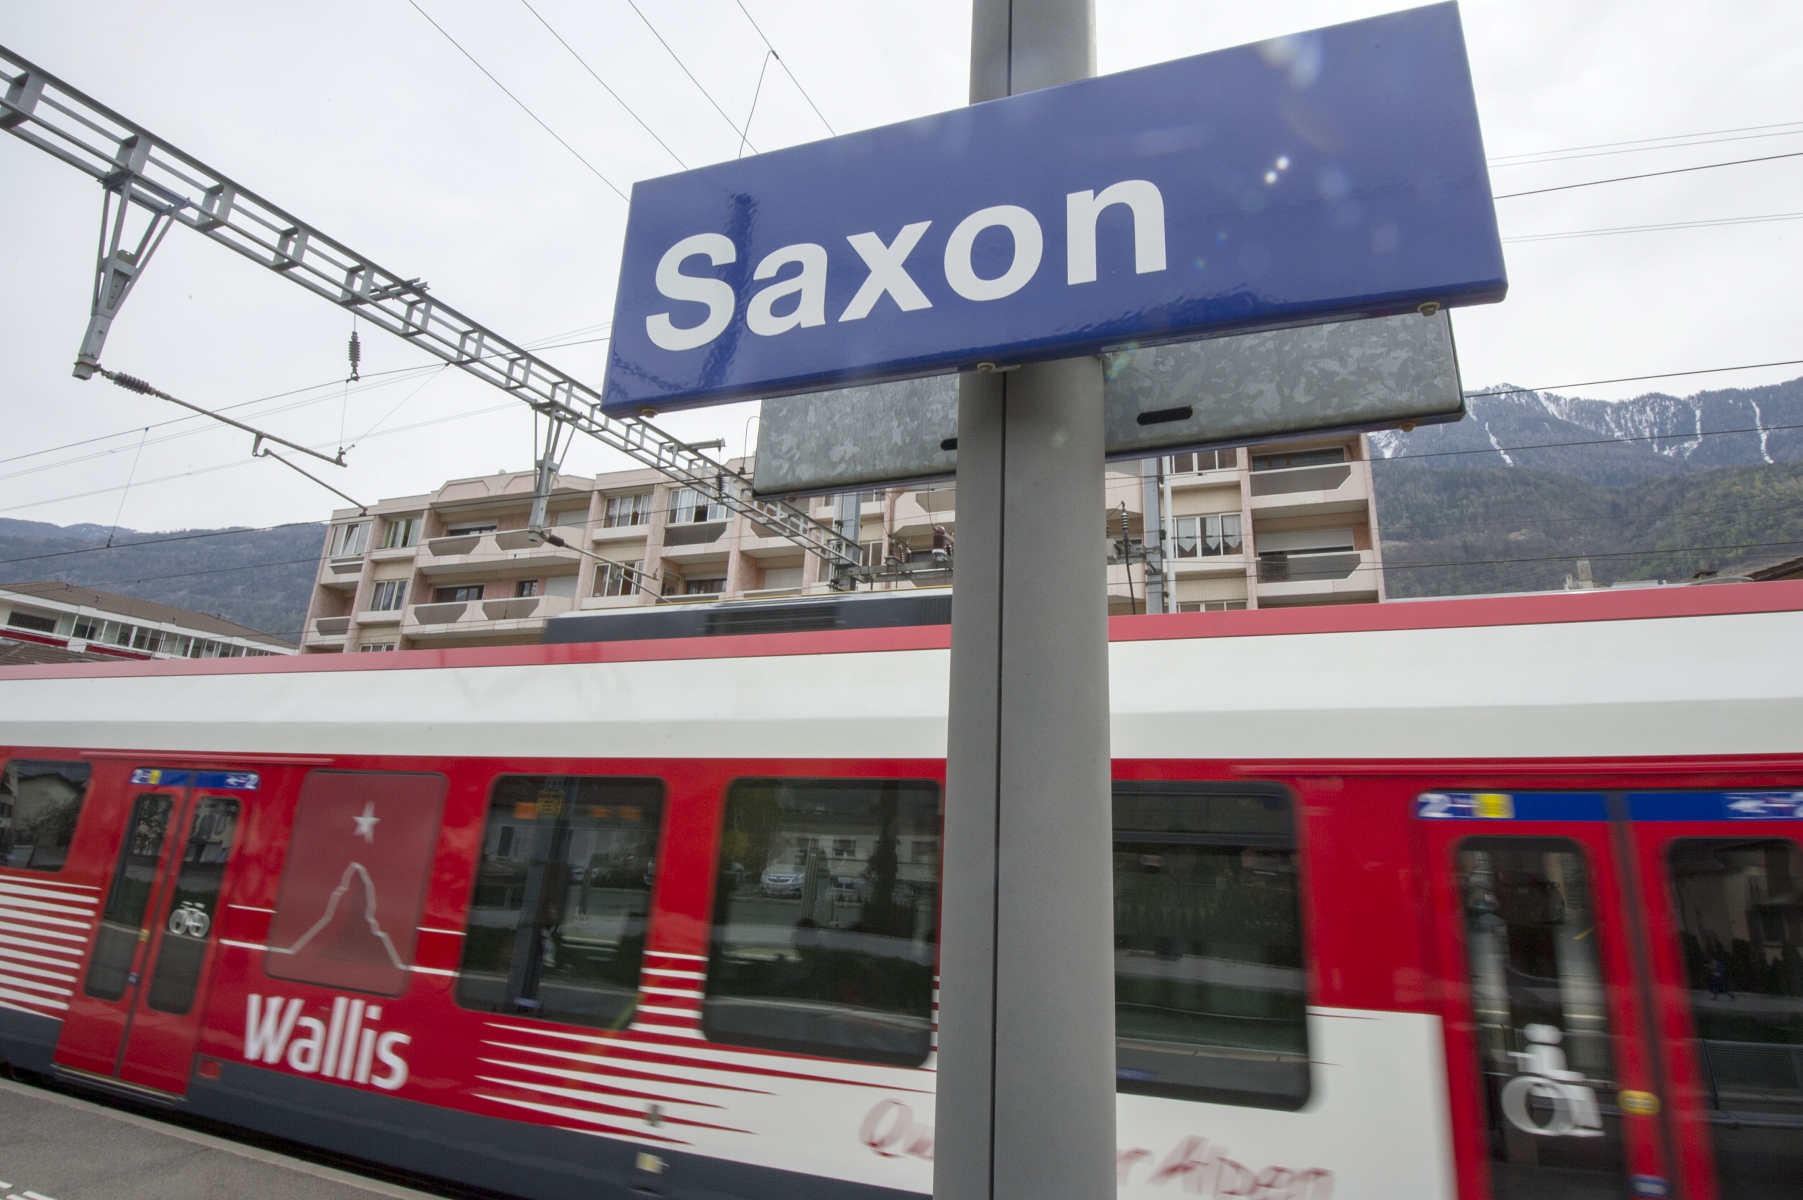 L'incident s'est produit mercredi soir à la gare de Saxon (archives).